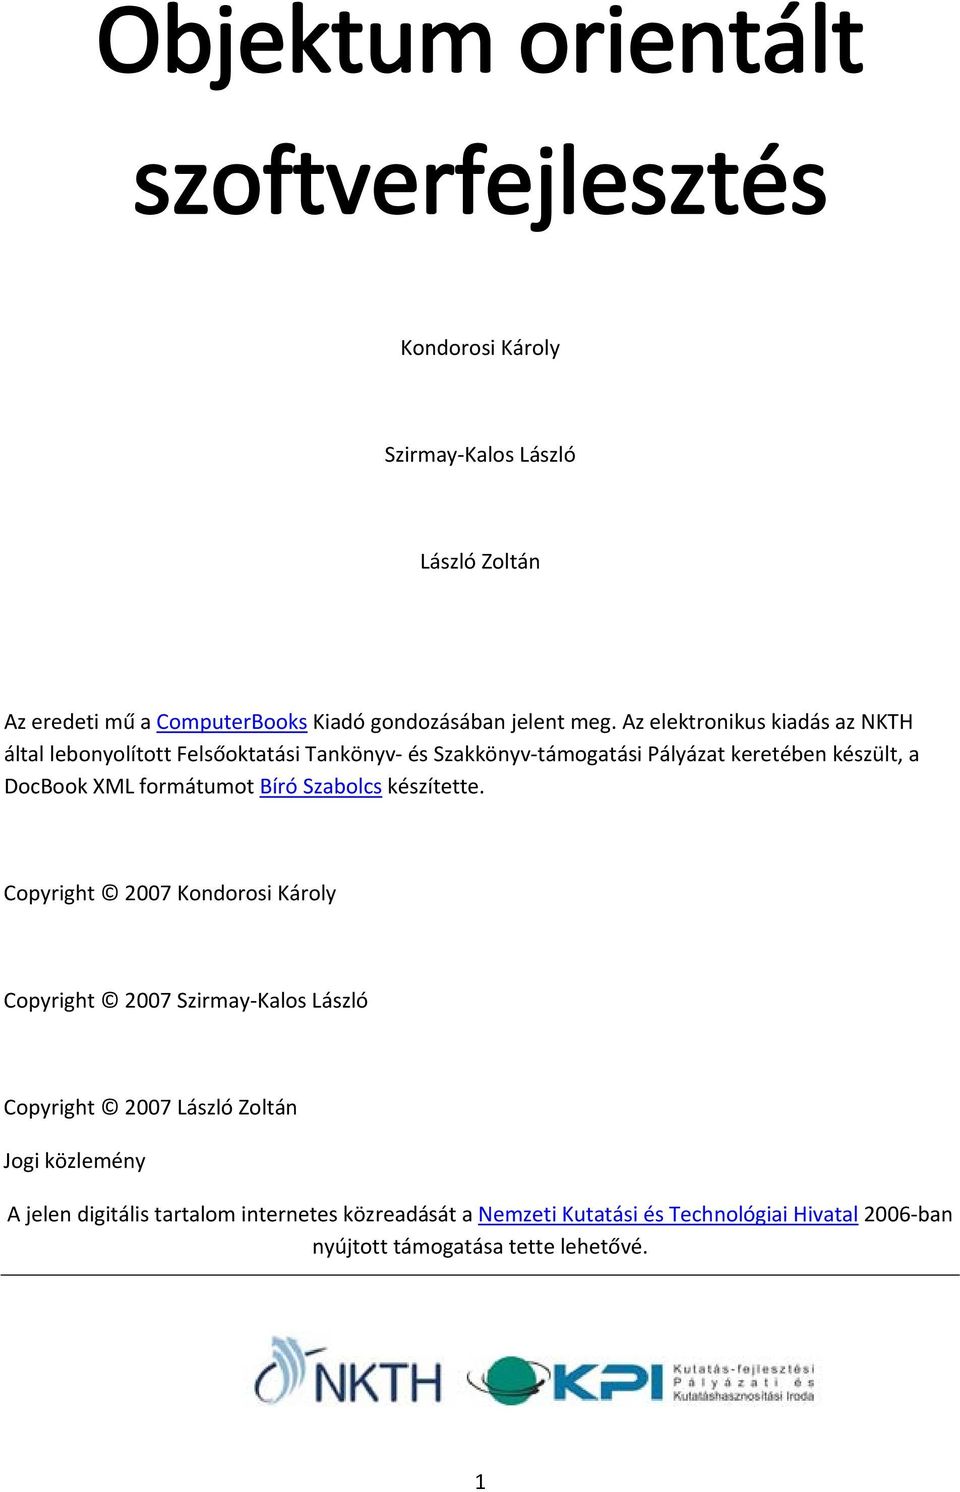 Az elektronikus kiadás az NKTH által lebonyolított Felsőoktatási Tankönyv és Szakkönyv támogatási Pályázat keretében készült, a DocBook XML